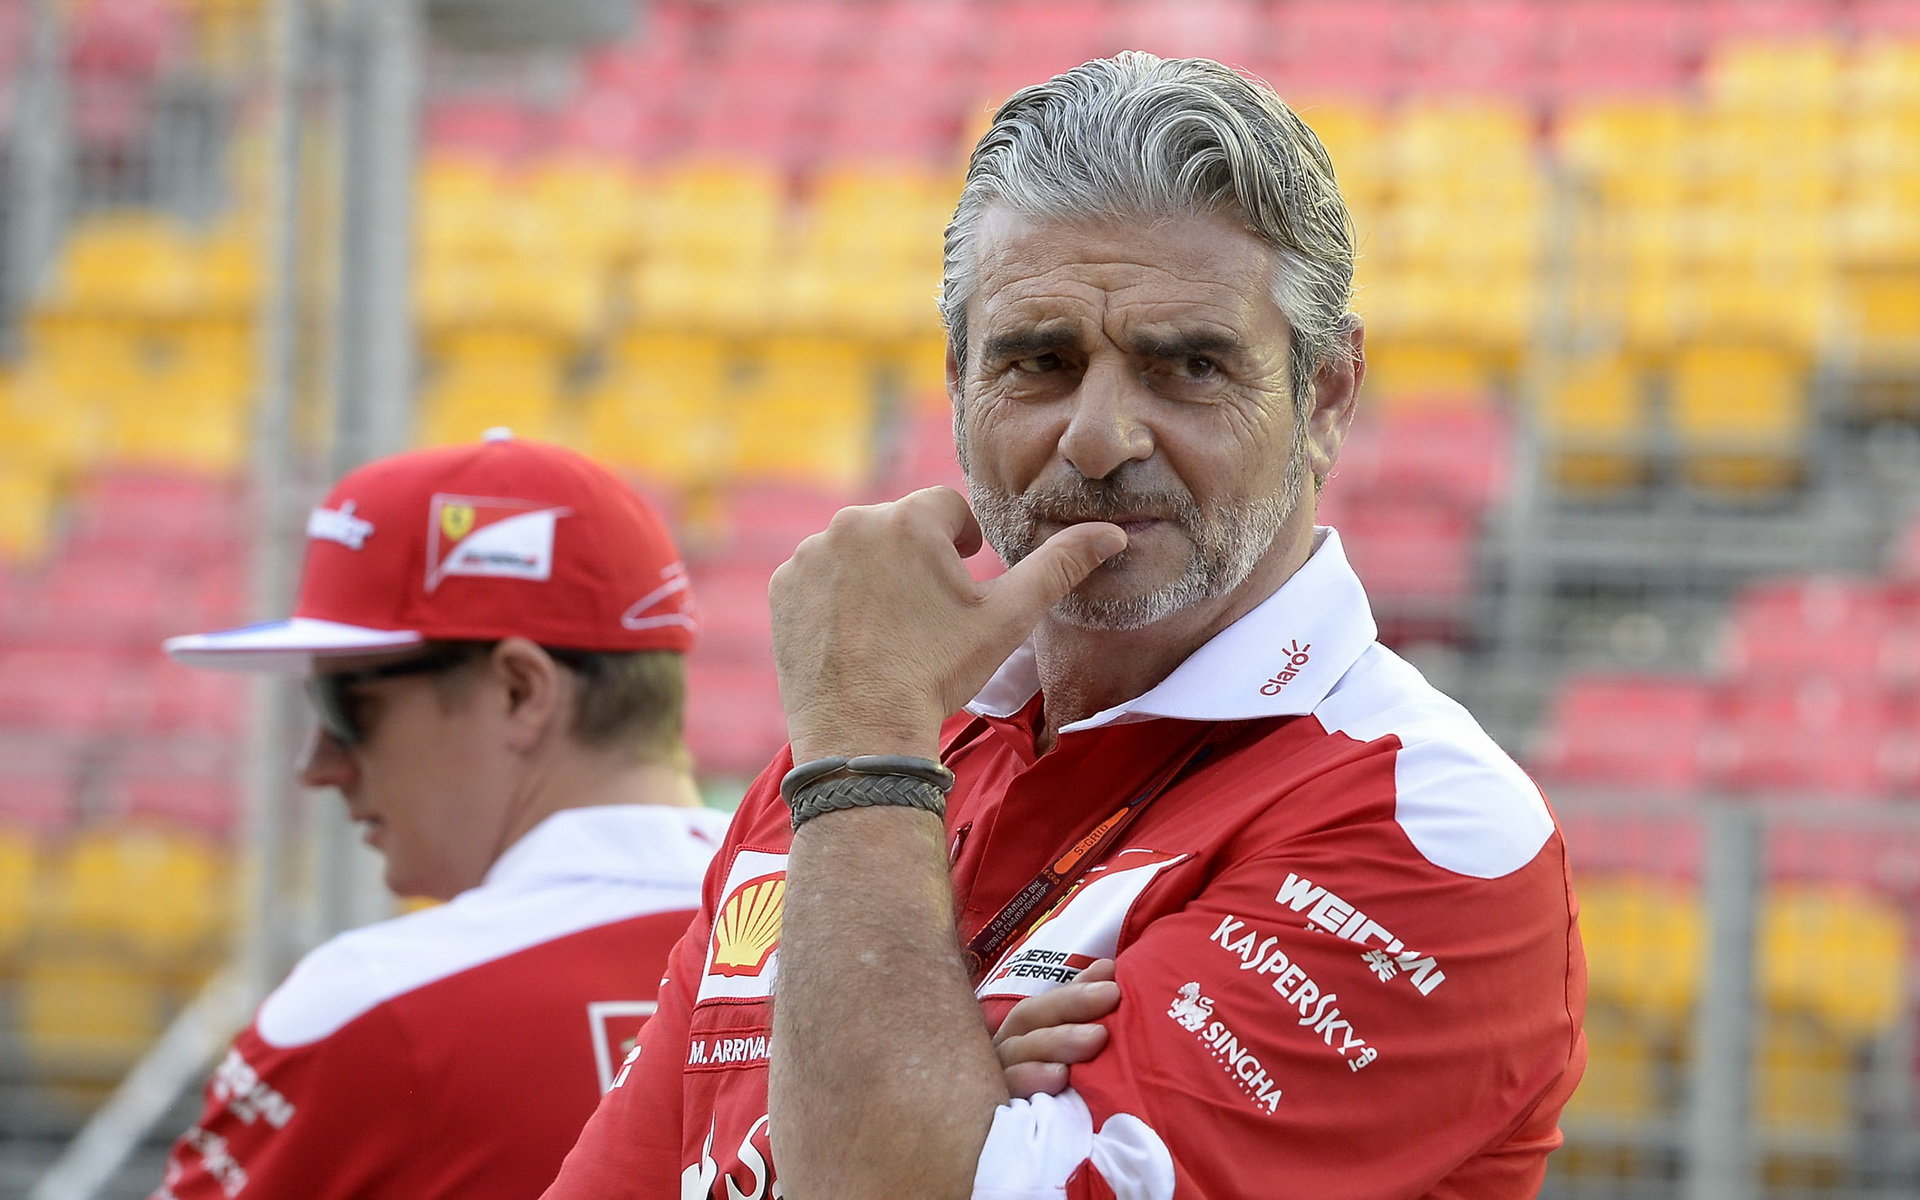 Šéf Ferrari Maurizio Arrivabene ani nikdo z jezdců nechtěli kolizi komentovat